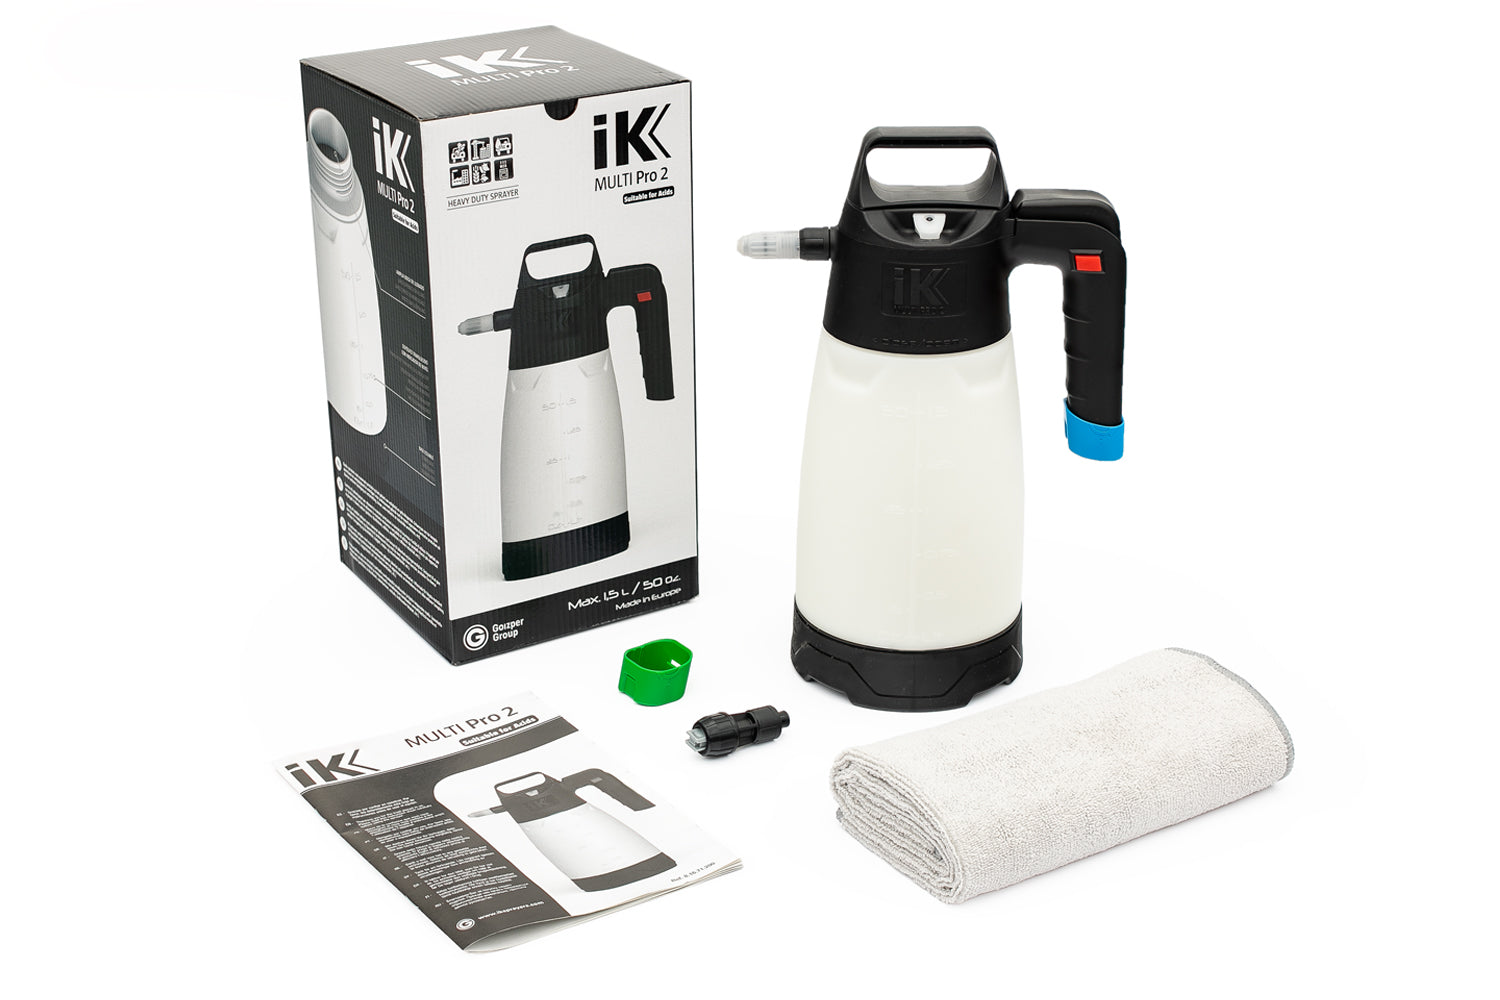 iK Multi Pro 2 Sprayer